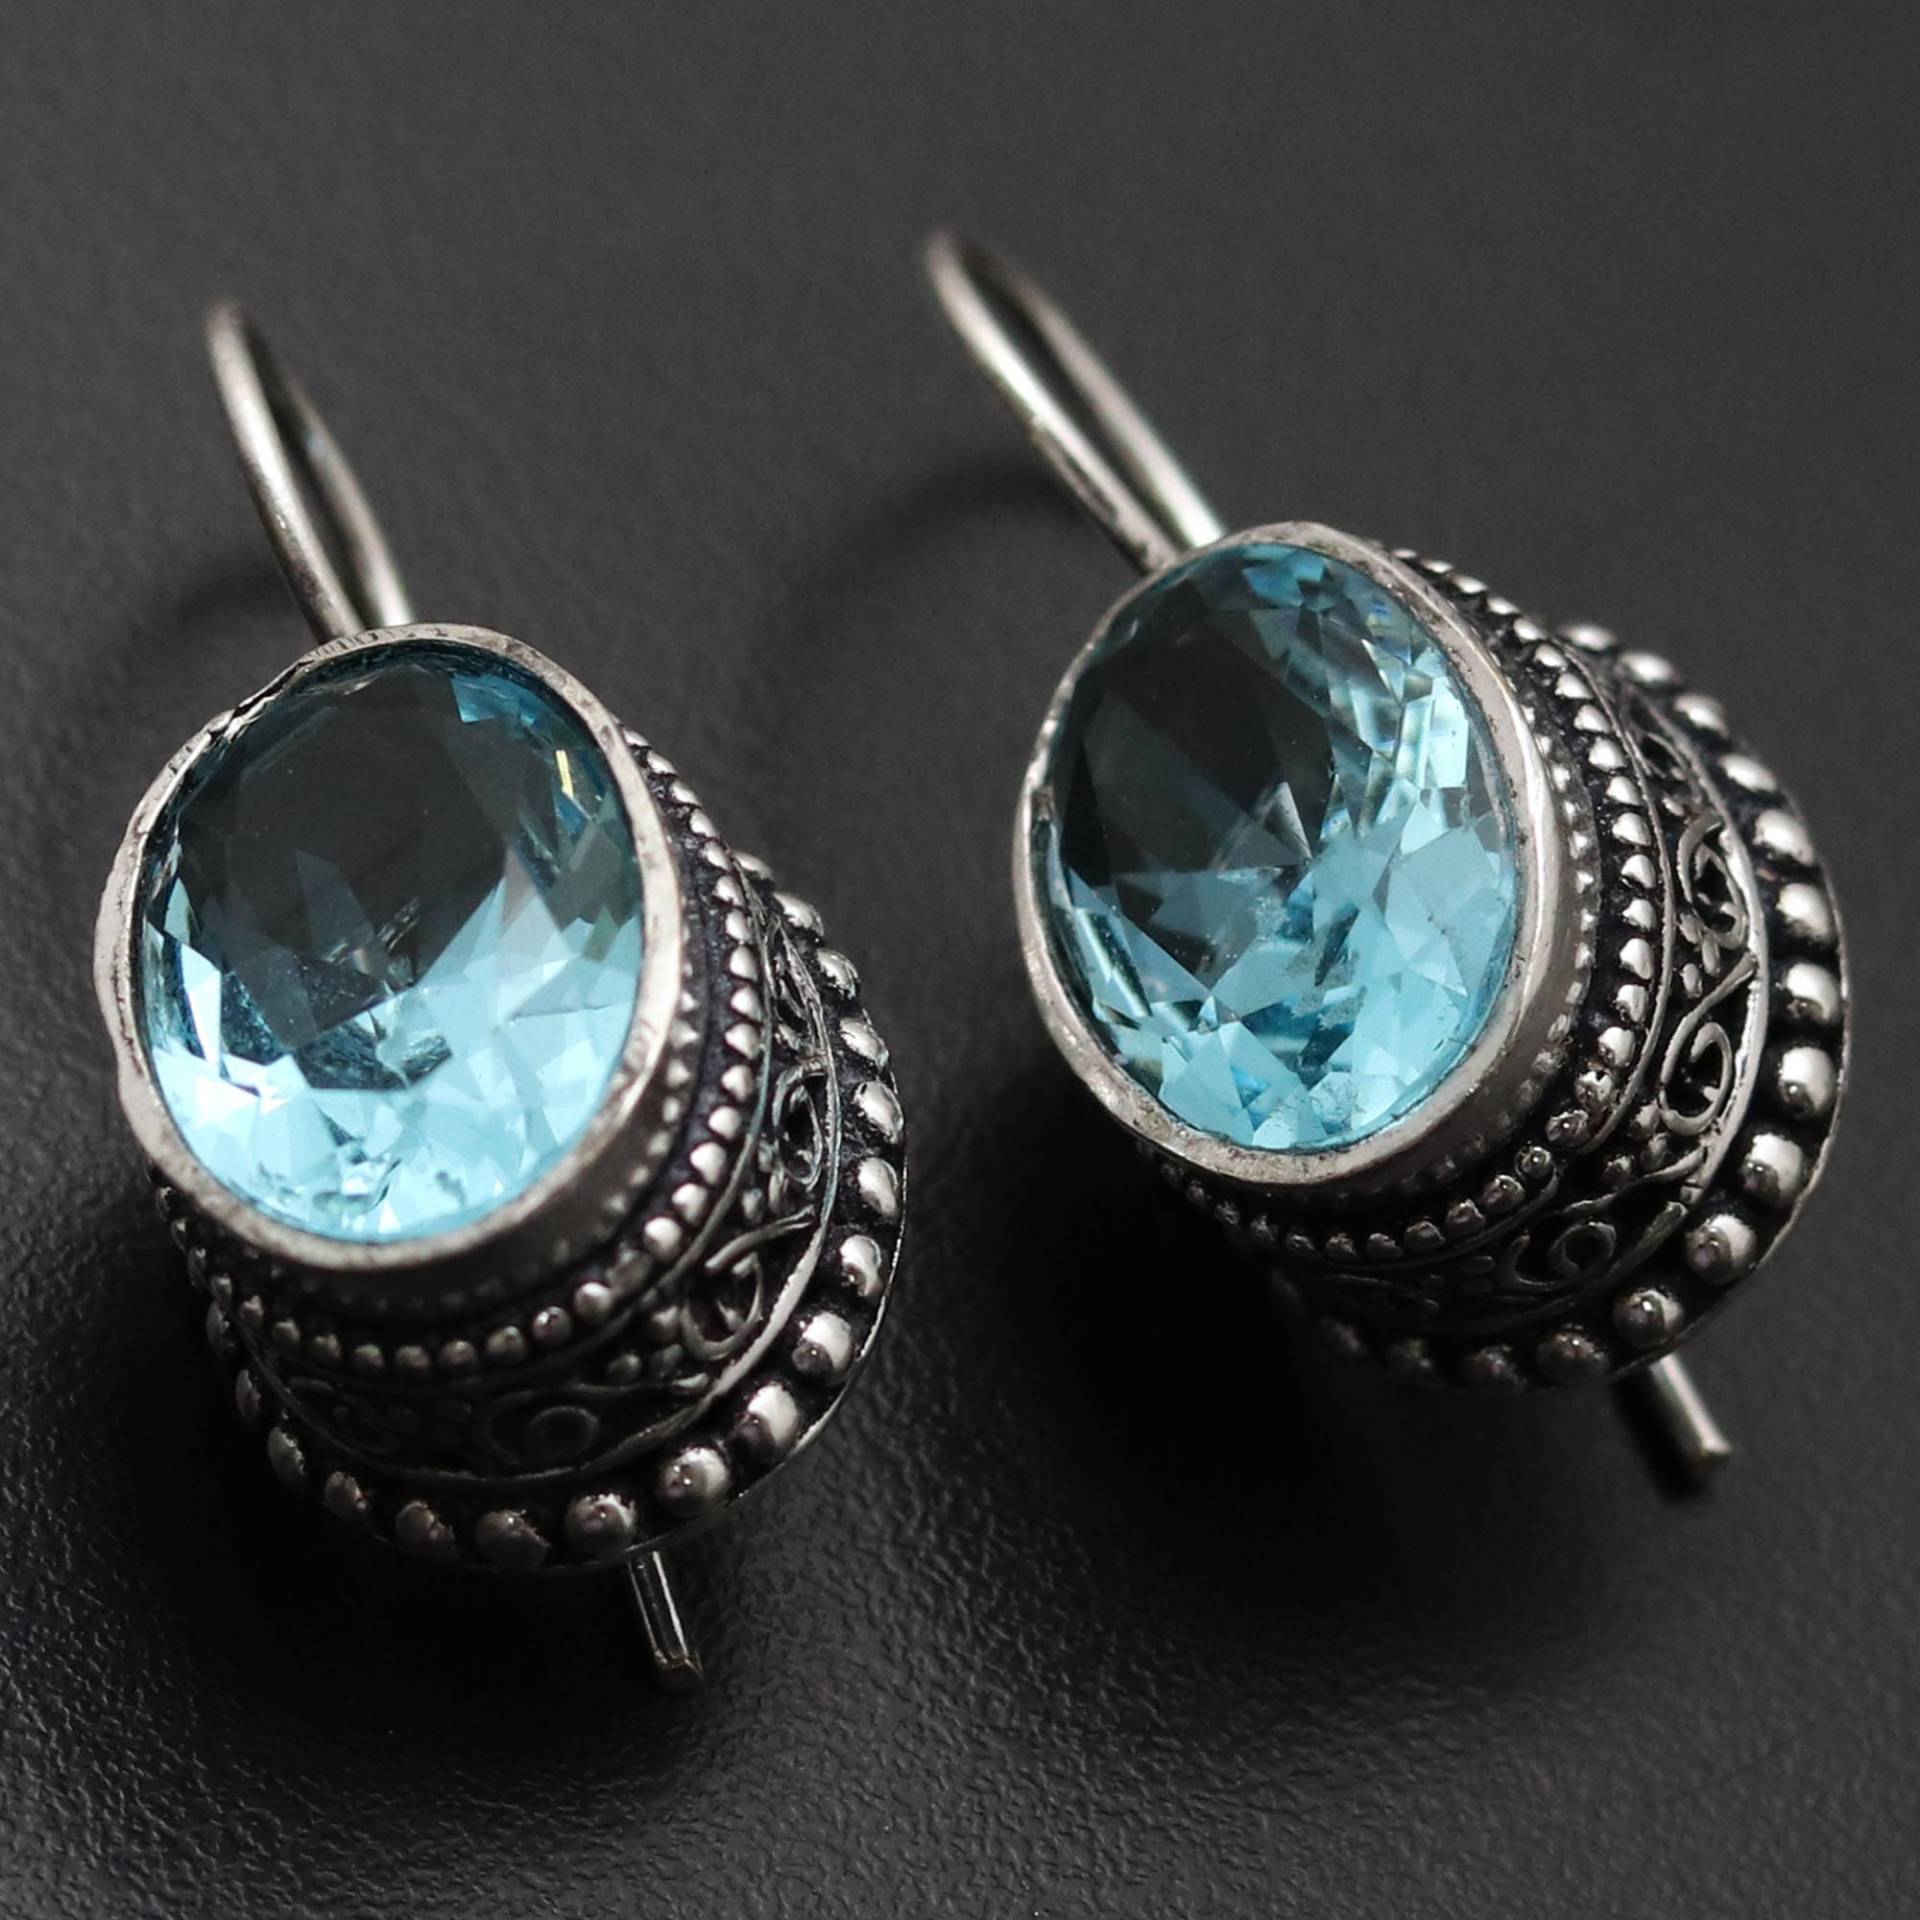 Blauquarz Edelstein Ohrringe Vintage Stil Schmuck Geschenk Für Sie Sterling Versilbert Ihn von MadonnaJewellery